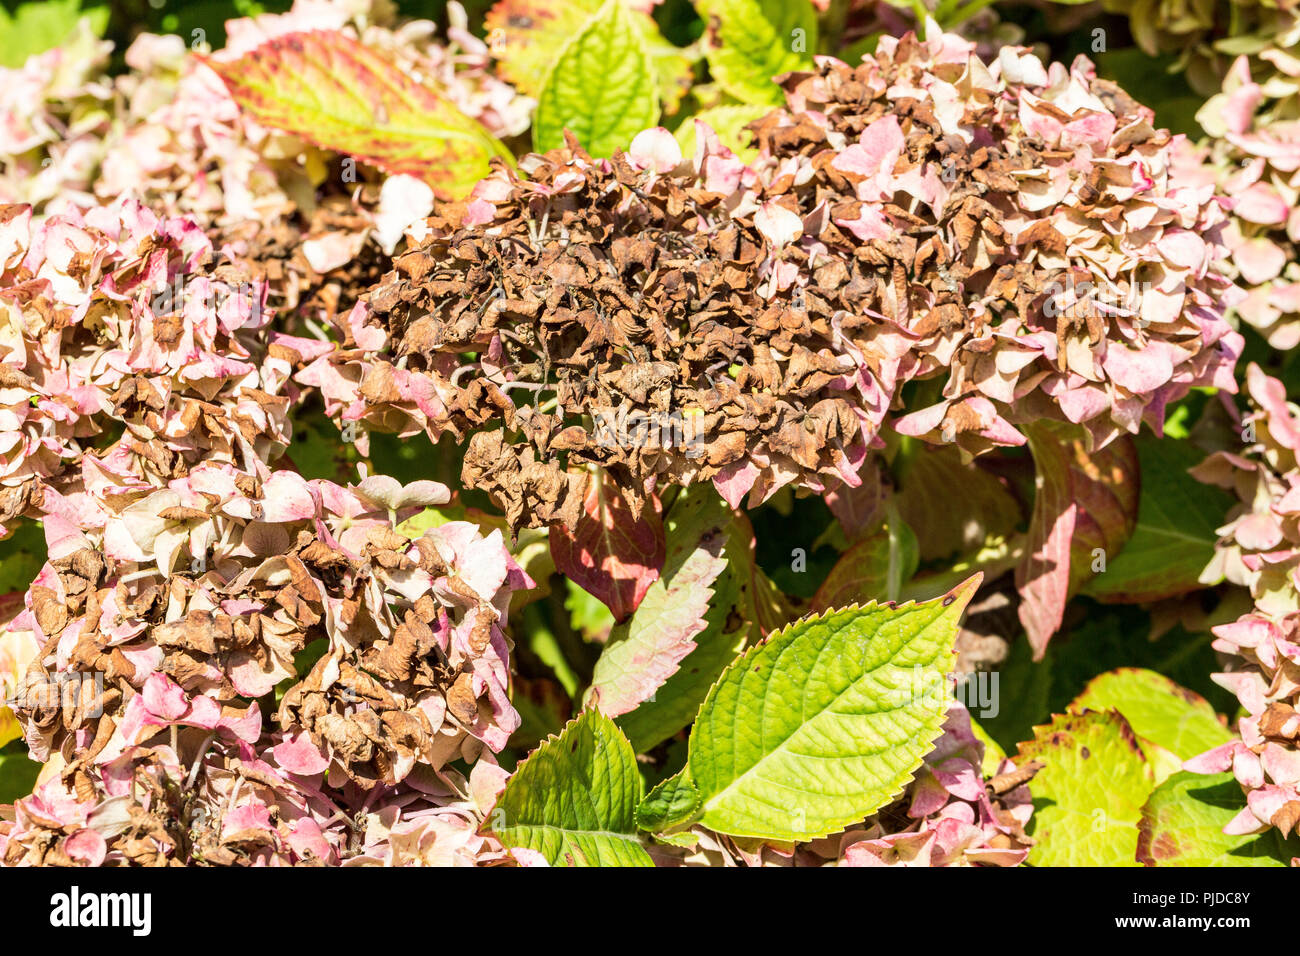 Krankheit der Blume hortensie Hortensie wegen des Mangels an Wasser und Verschmutzung. Armillaria Mellea, chlorosen Virus Parasit ascale Insekten Milbe milbensauger können Stockfoto